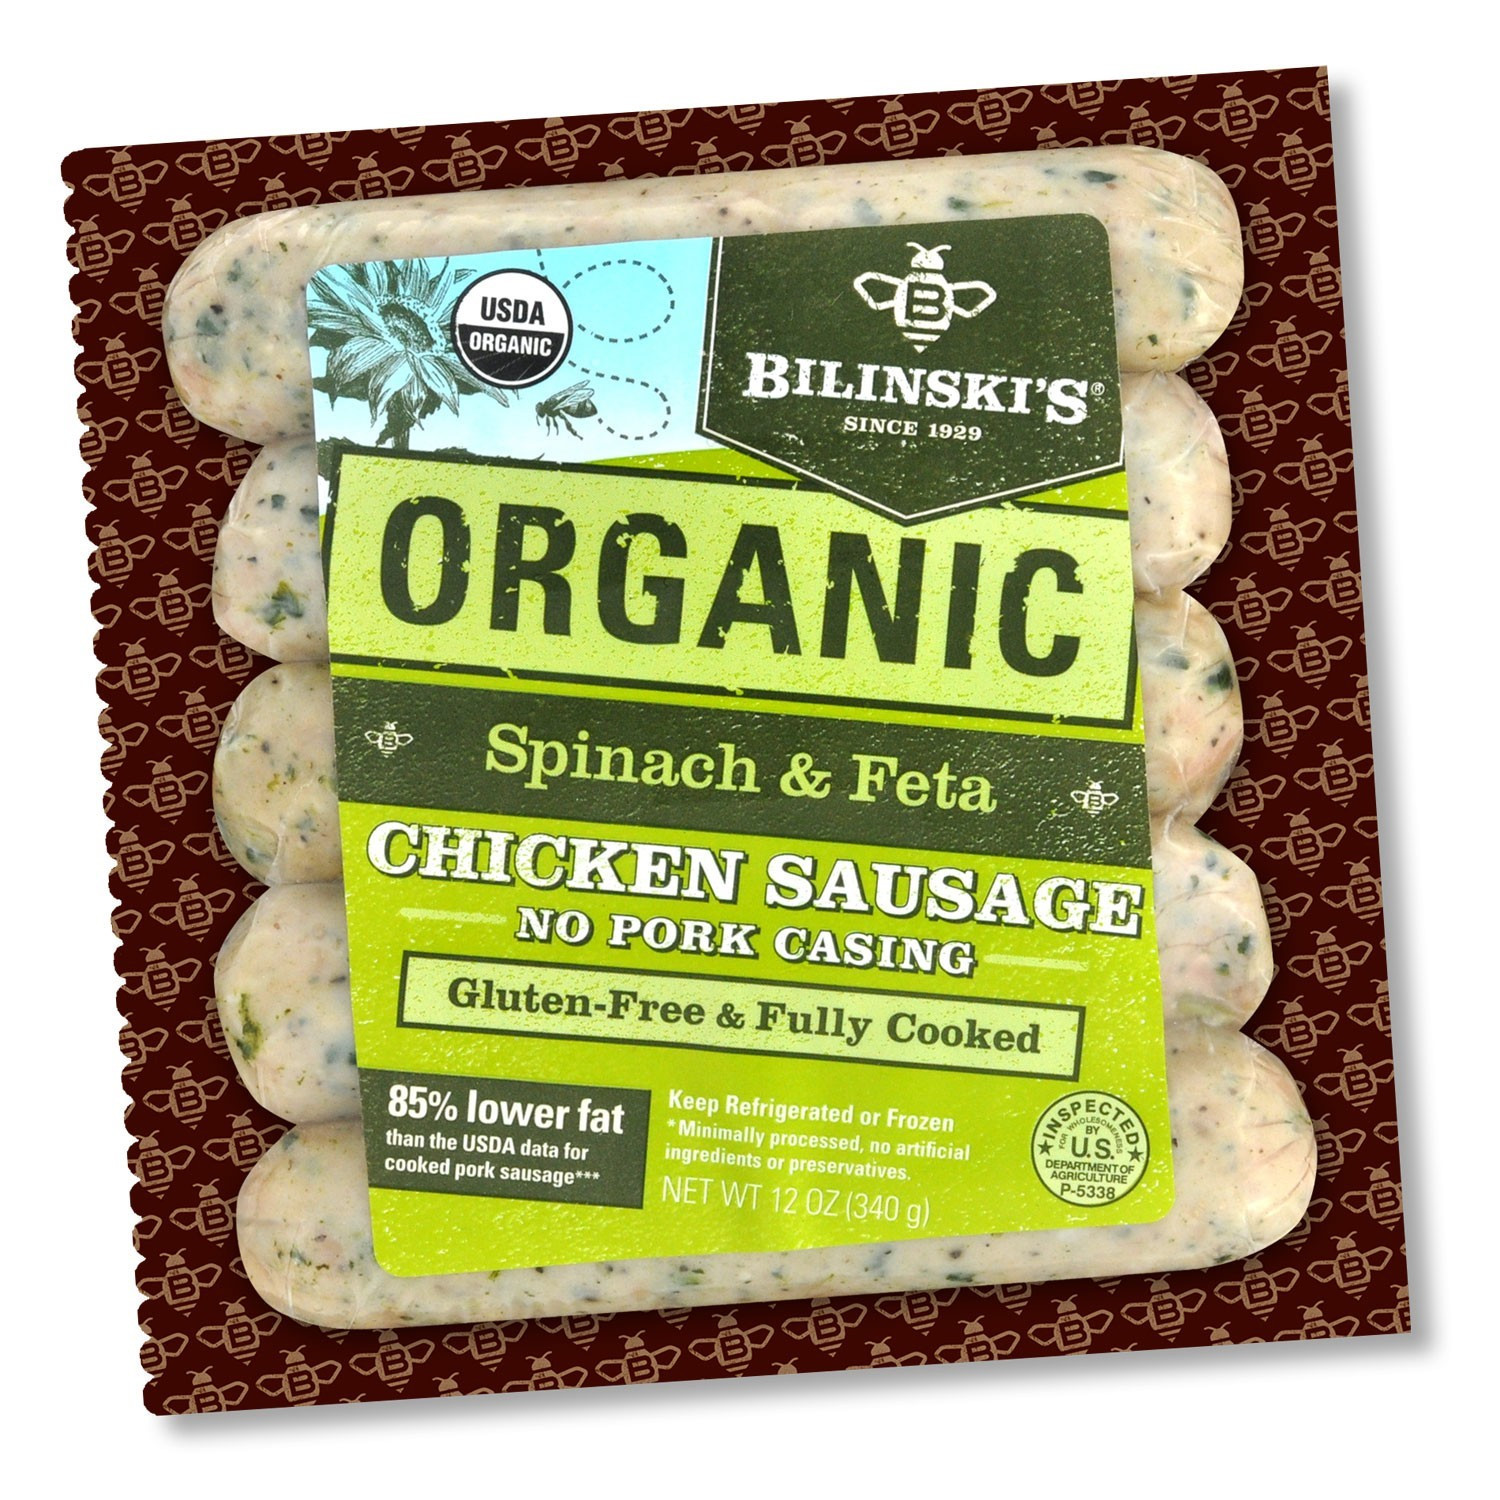 Bilinski organic Chicken Sausage 20 Best Ideas Bilinski S organic Spinach and Feta Chicken Sausage 0 75